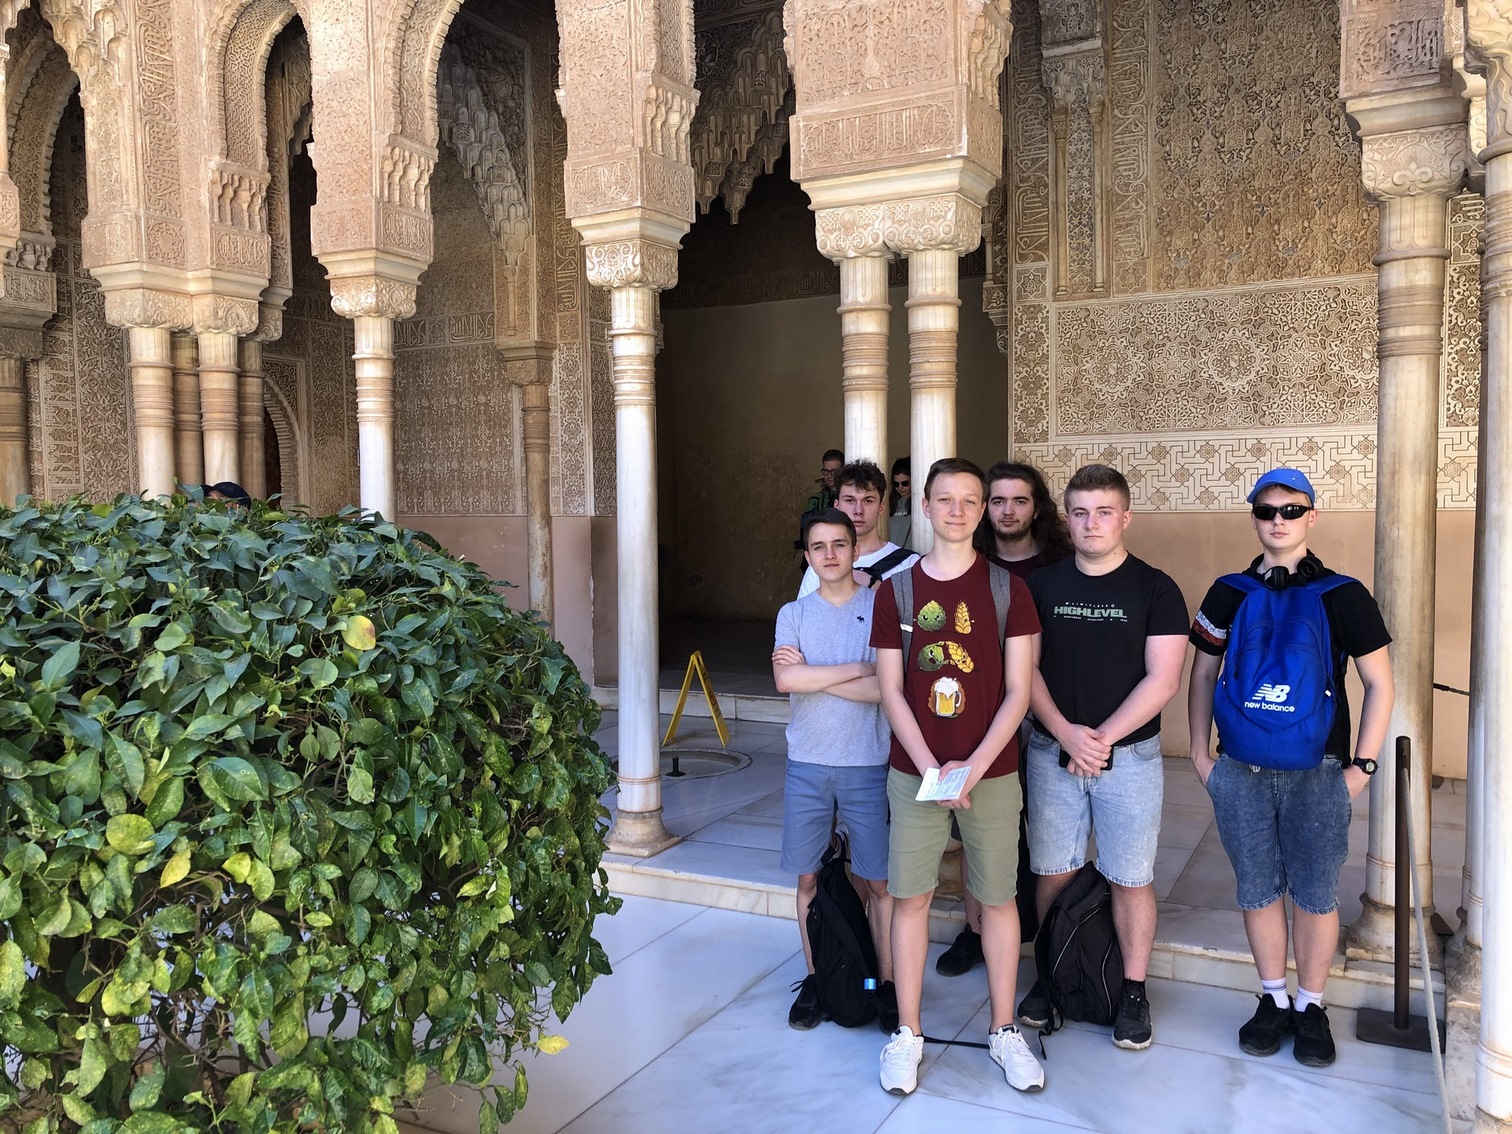 Kompleks zamkowo - pałacowy Alhambra – Granada